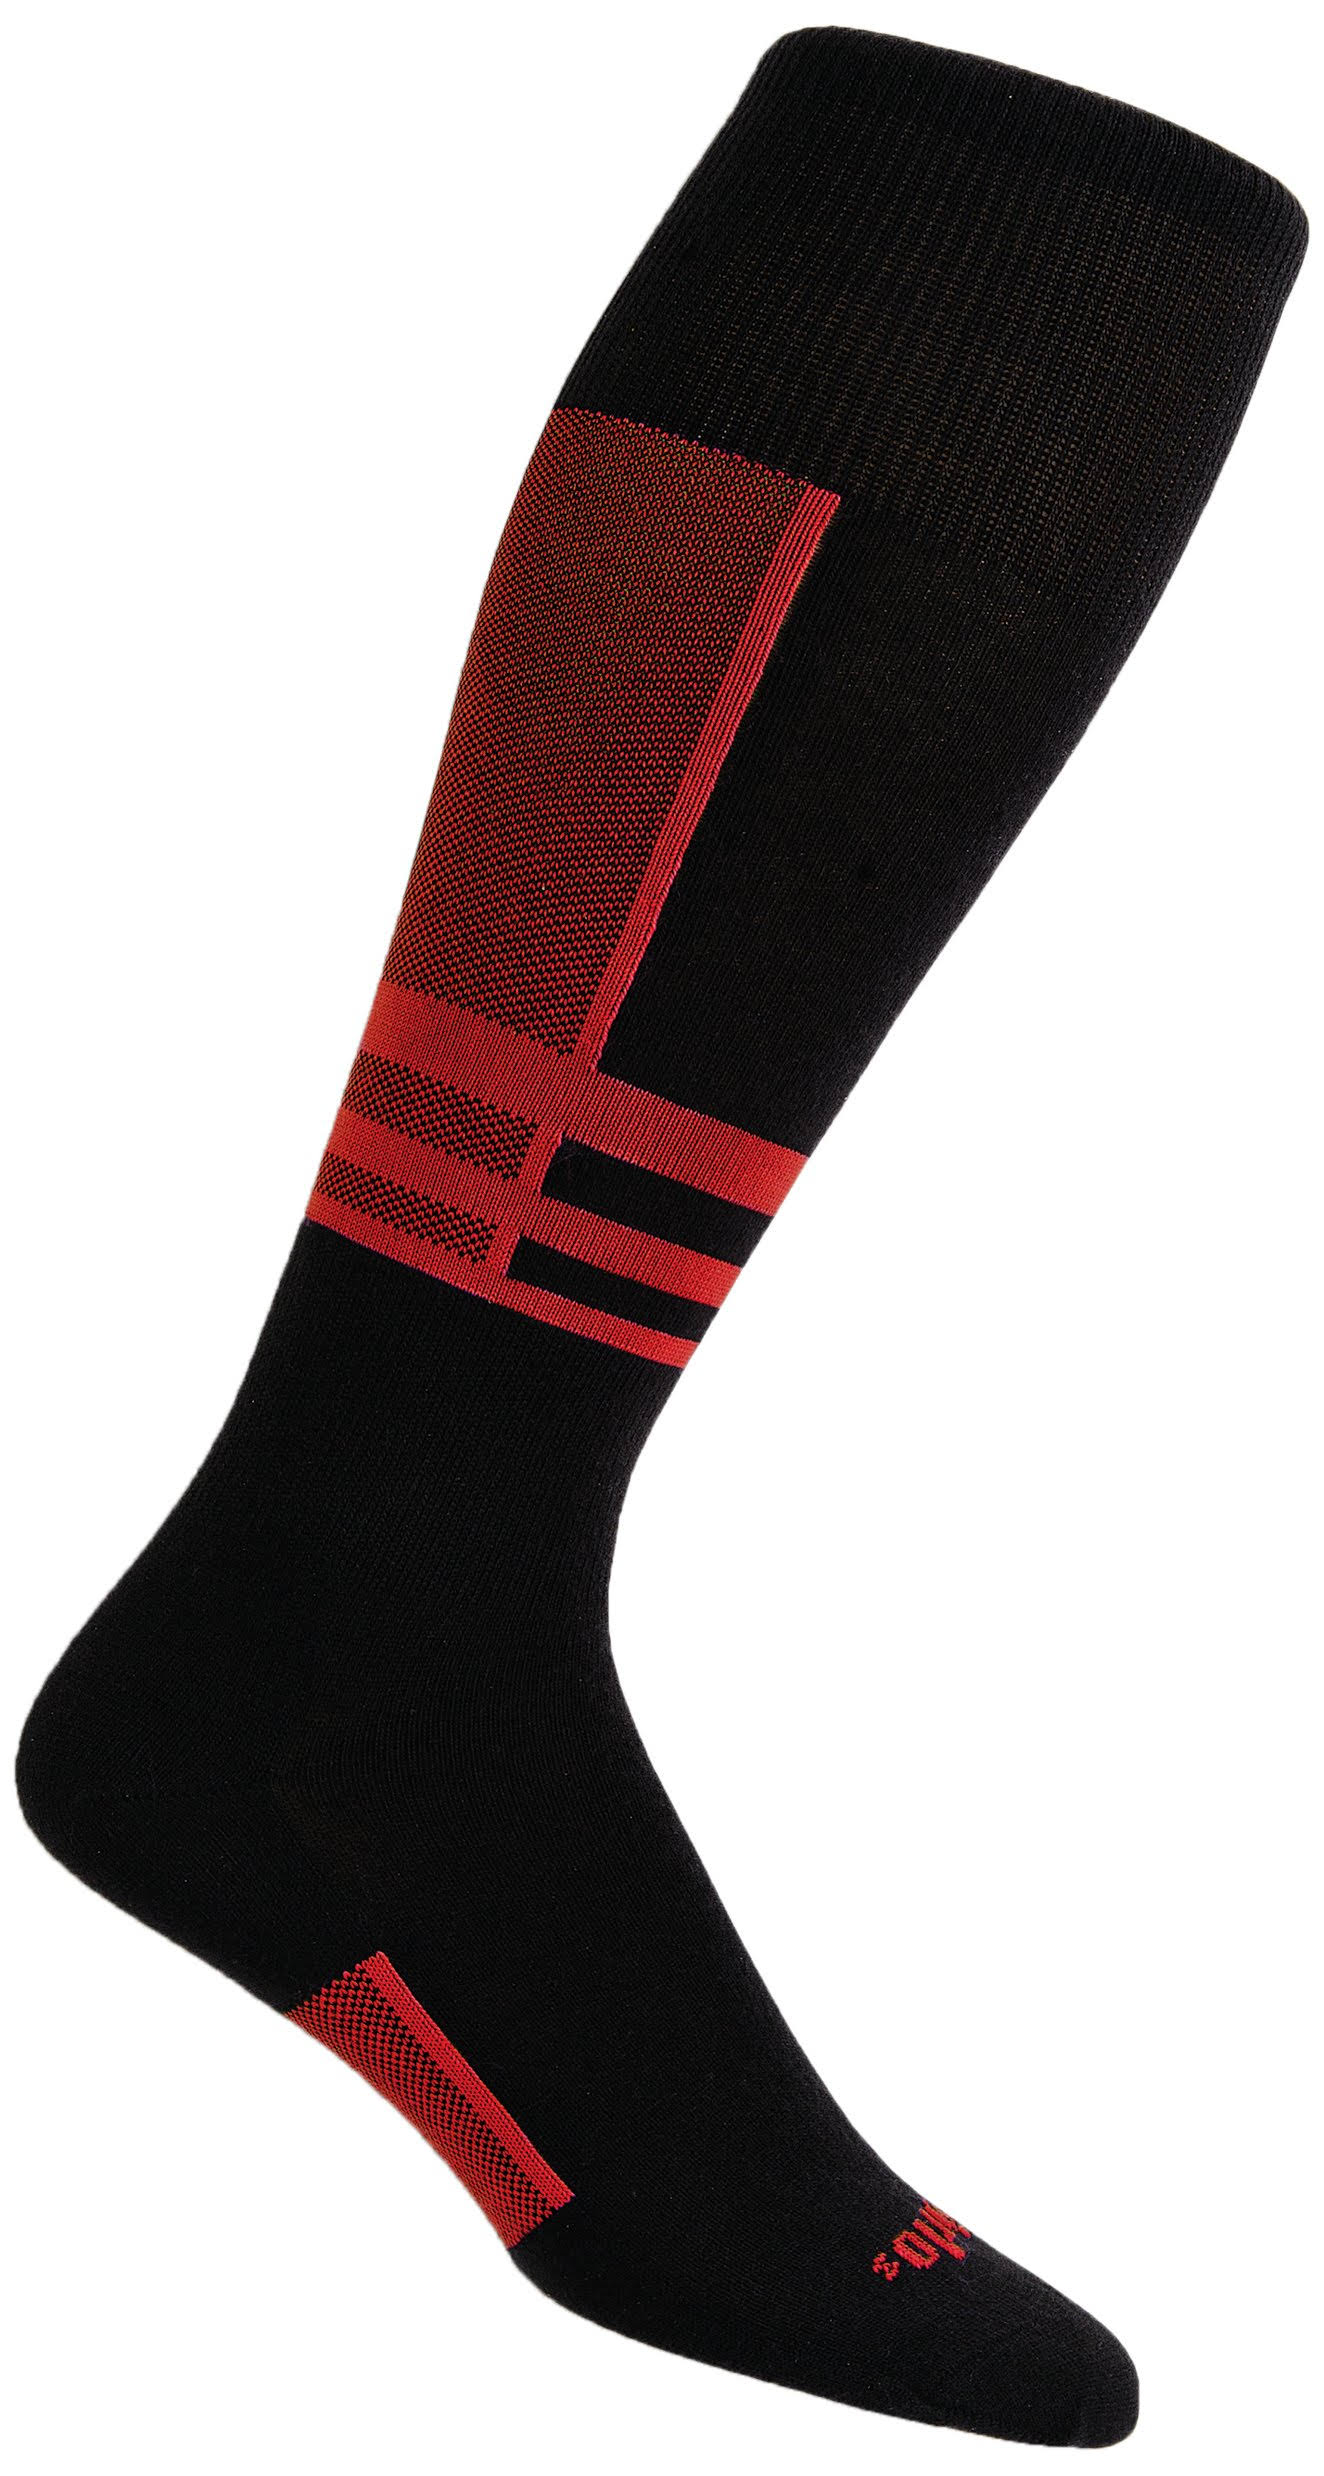 Thorlo Ultra Light Ski Liner Sock - Red/Black, 10-11